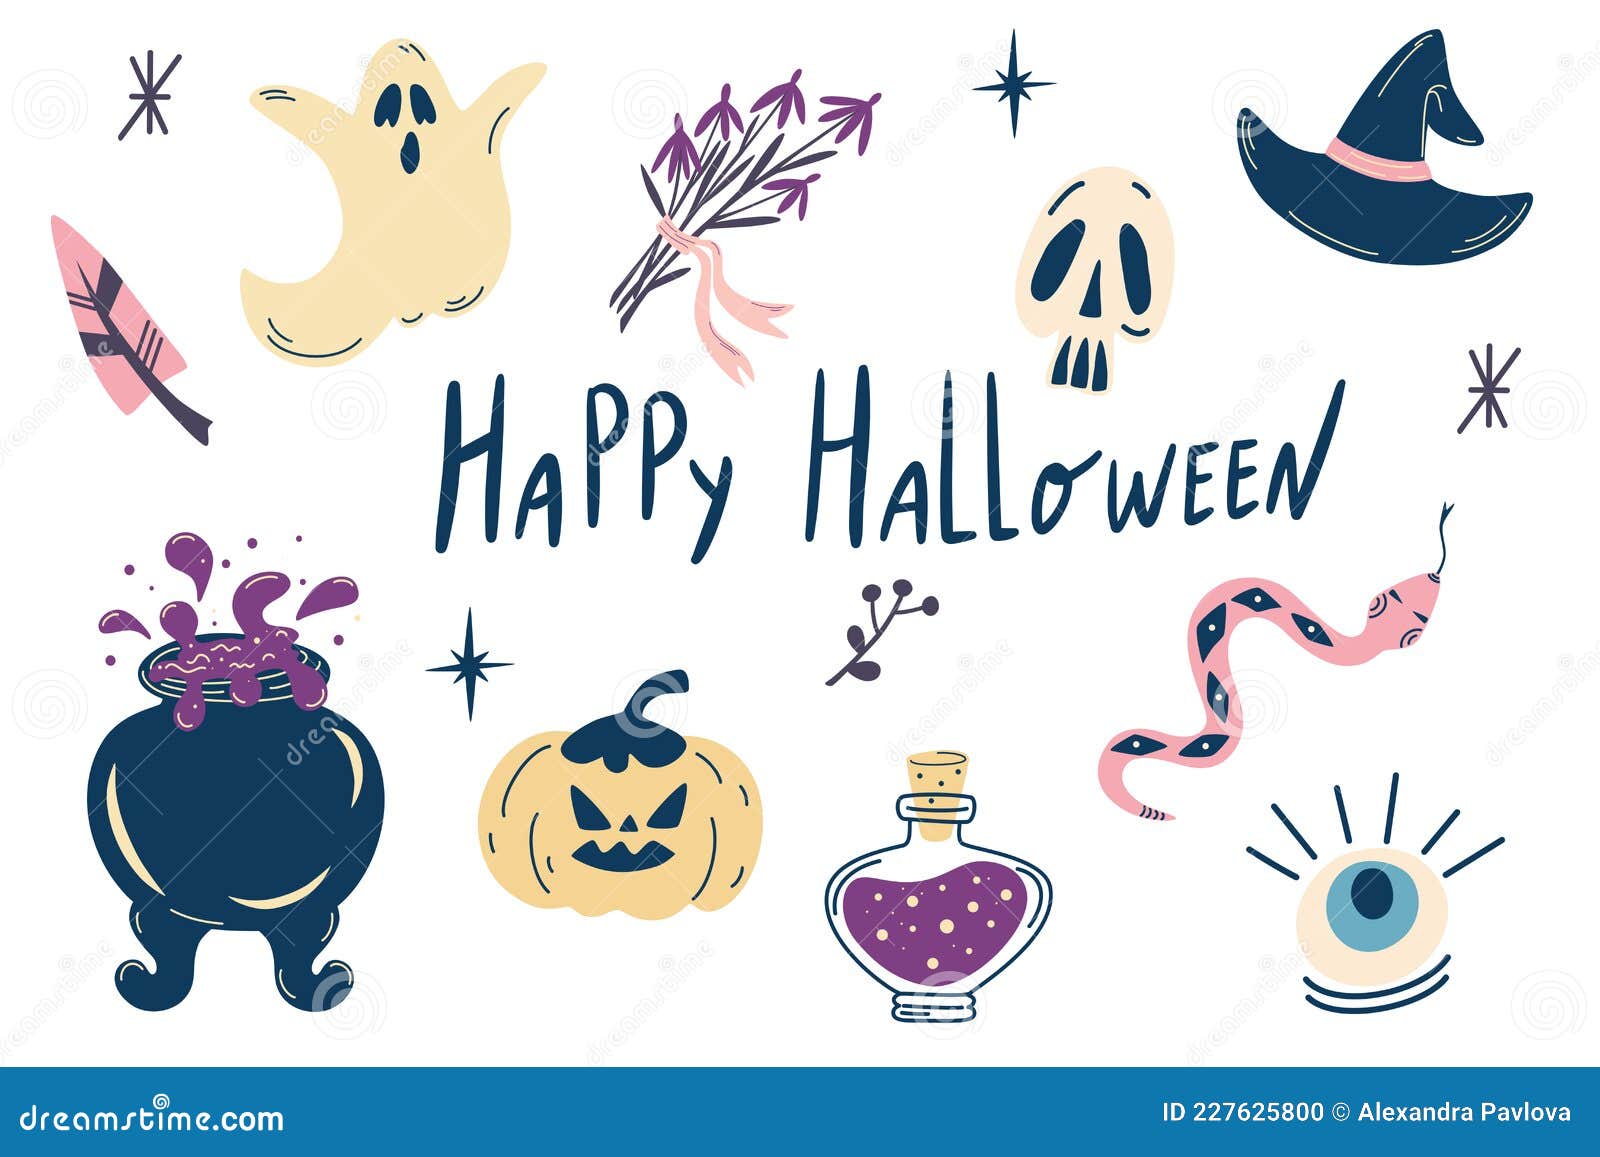 Ilustração de desenho animado de halloween com adesivos fofos